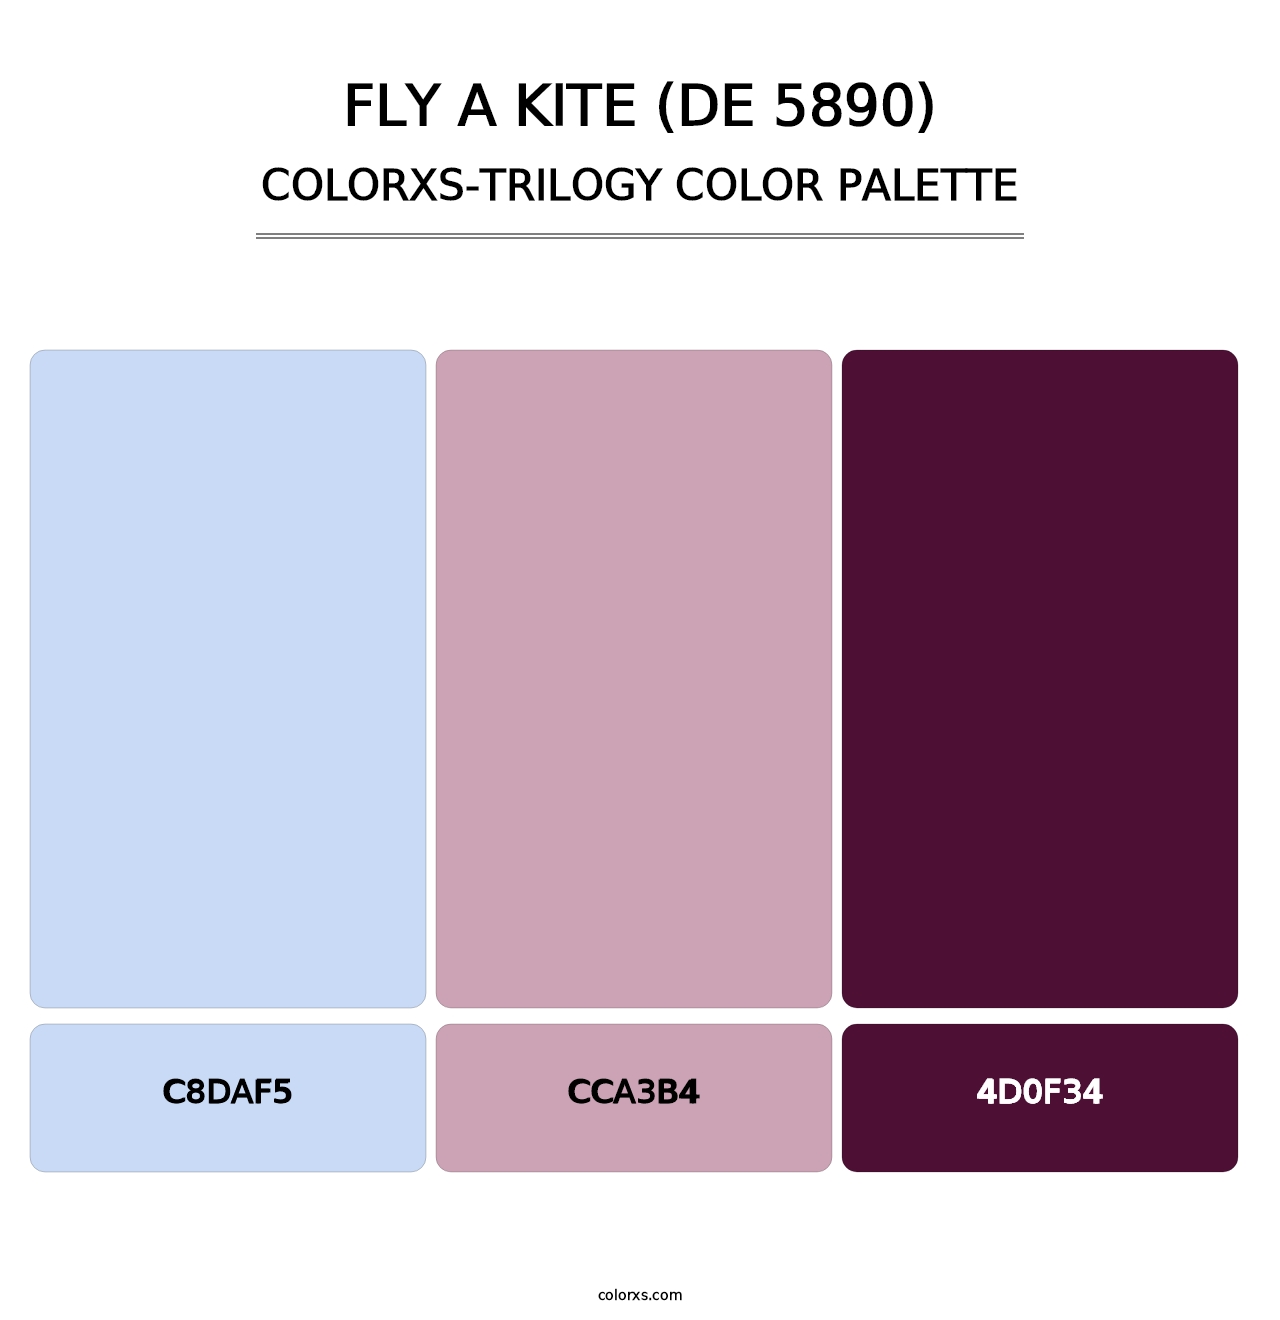 Fly a Kite (DE 5890) - Colorxs Trilogy Palette